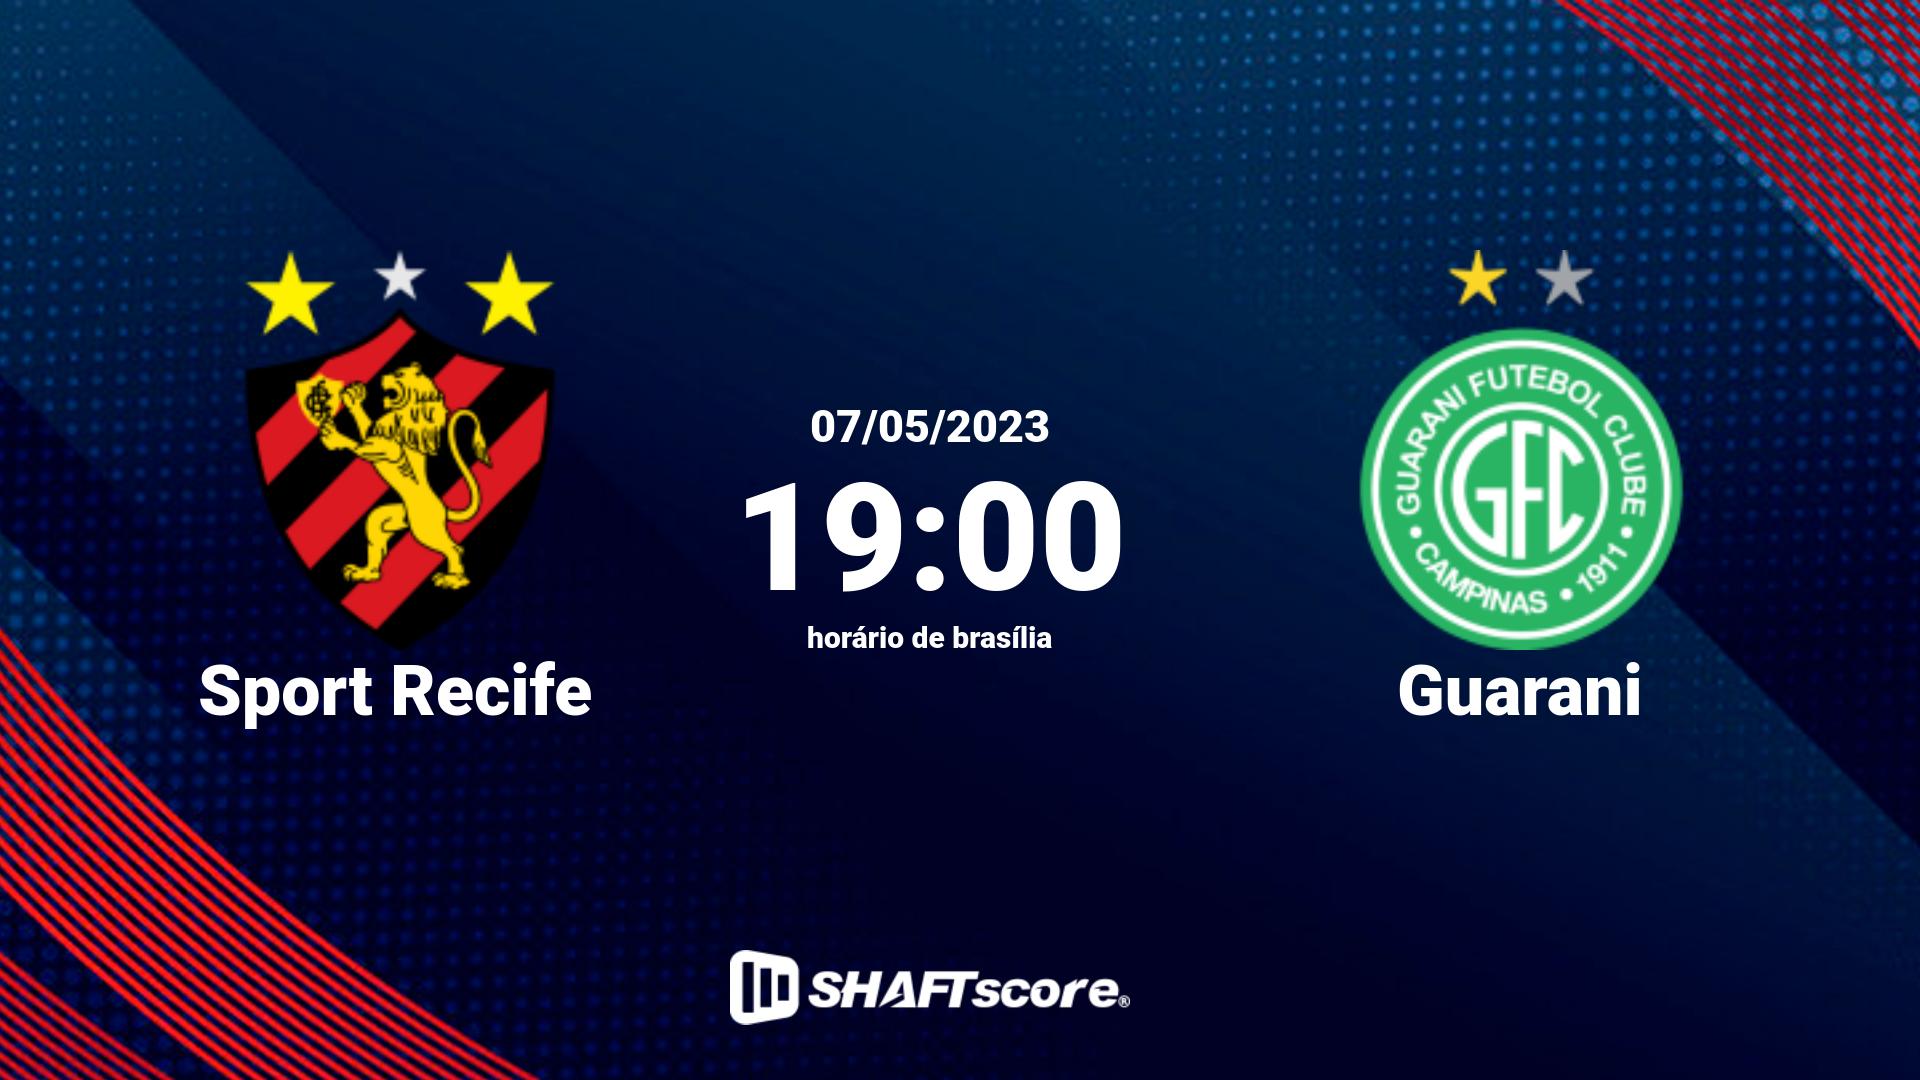 Estatísticas do jogo Sport Recife vs Guarani 07.05 19:00